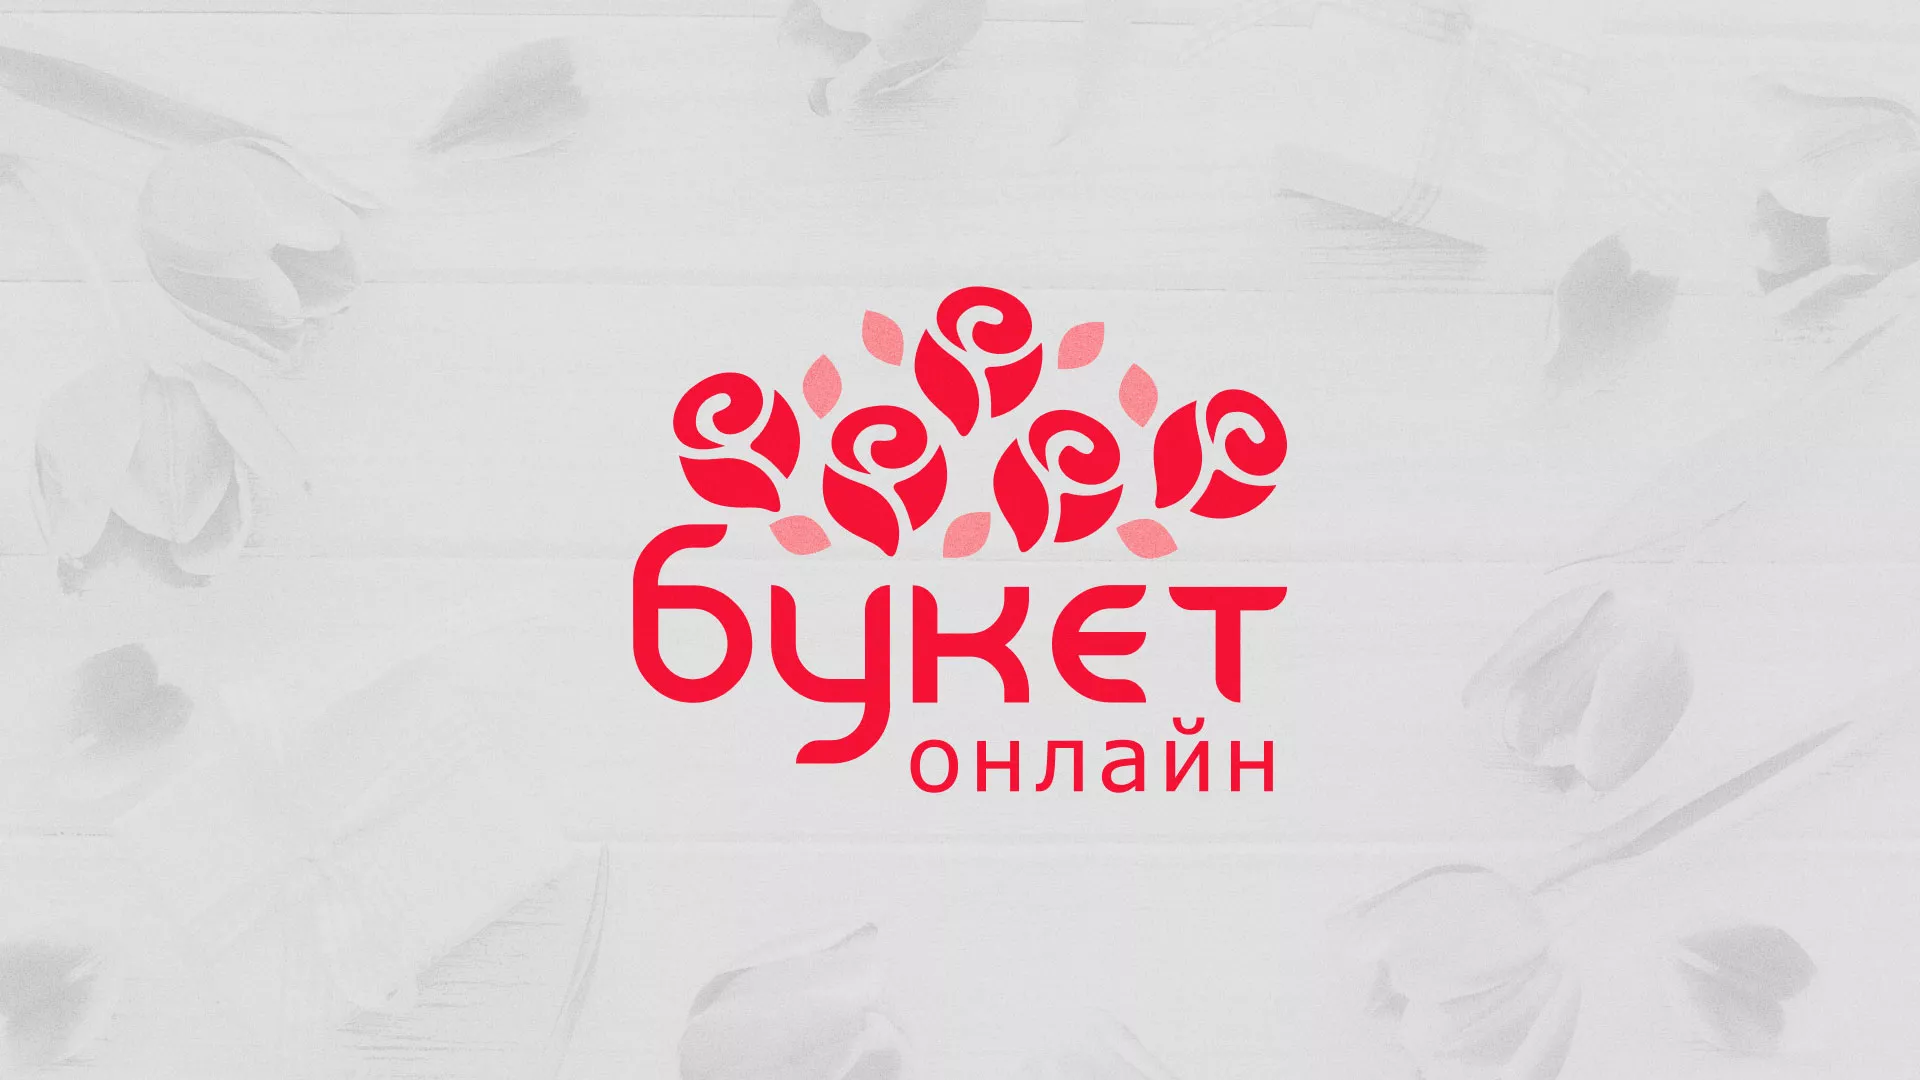 Создание интернет-магазина «Букет-онлайн» по цветам в Северобайкальске